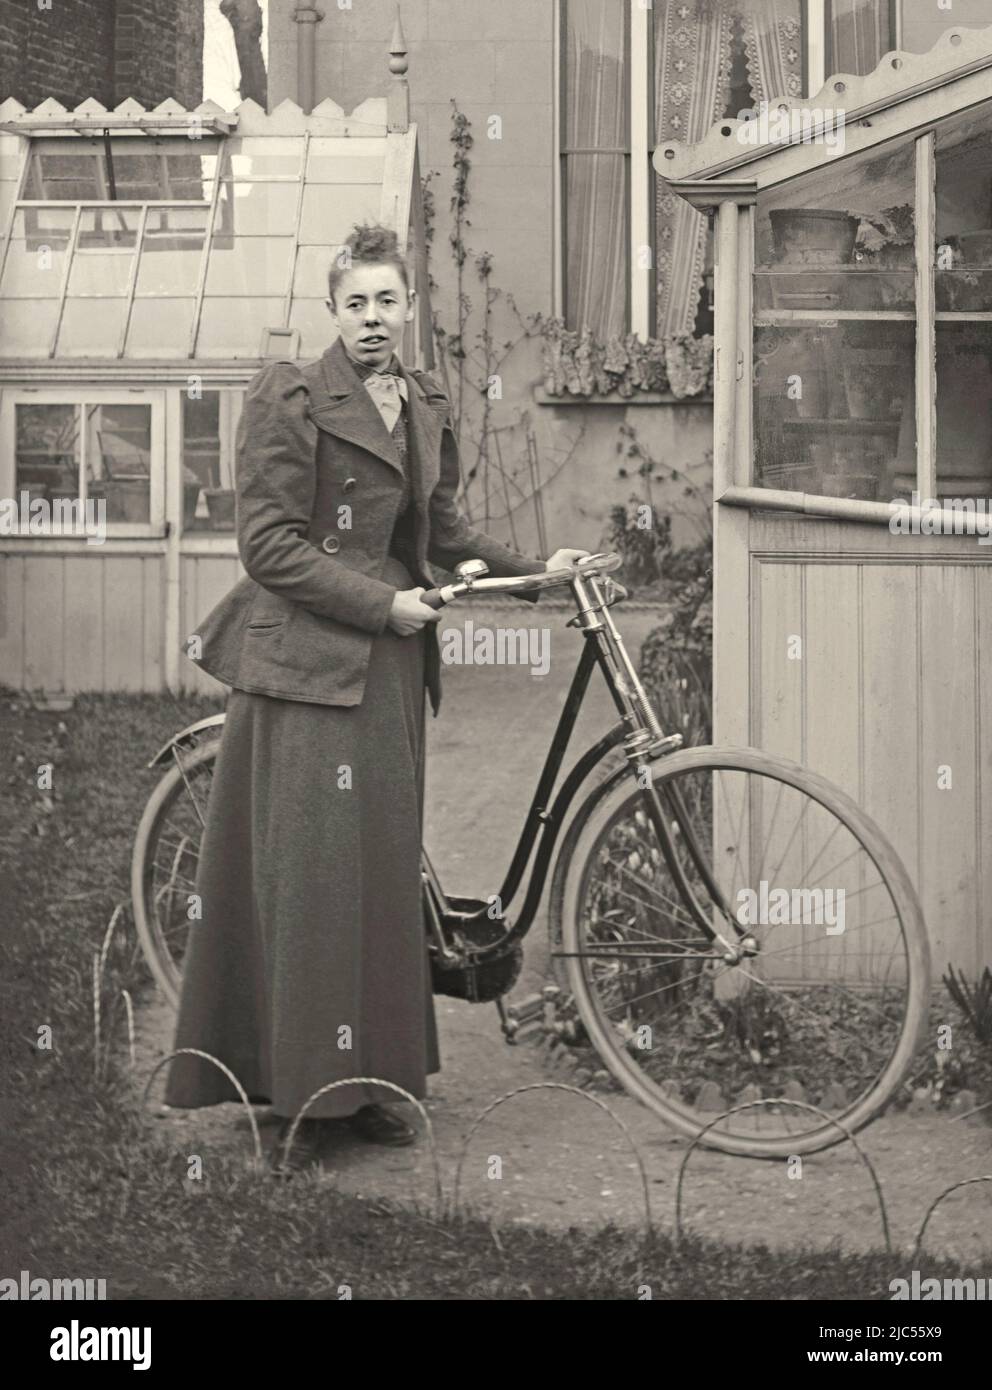 Una mujer posa con la bicicleta de su dama en su jardín trasero, Reino Unido c. 1900. Lleva ropa adecuada para montar a caballo. El jardín trasero alberga dos invernaderos. Esto es de un negativo de vidrio victoriano antiguo – una fotografía vintage de 1800s/1900s. Foto de stock